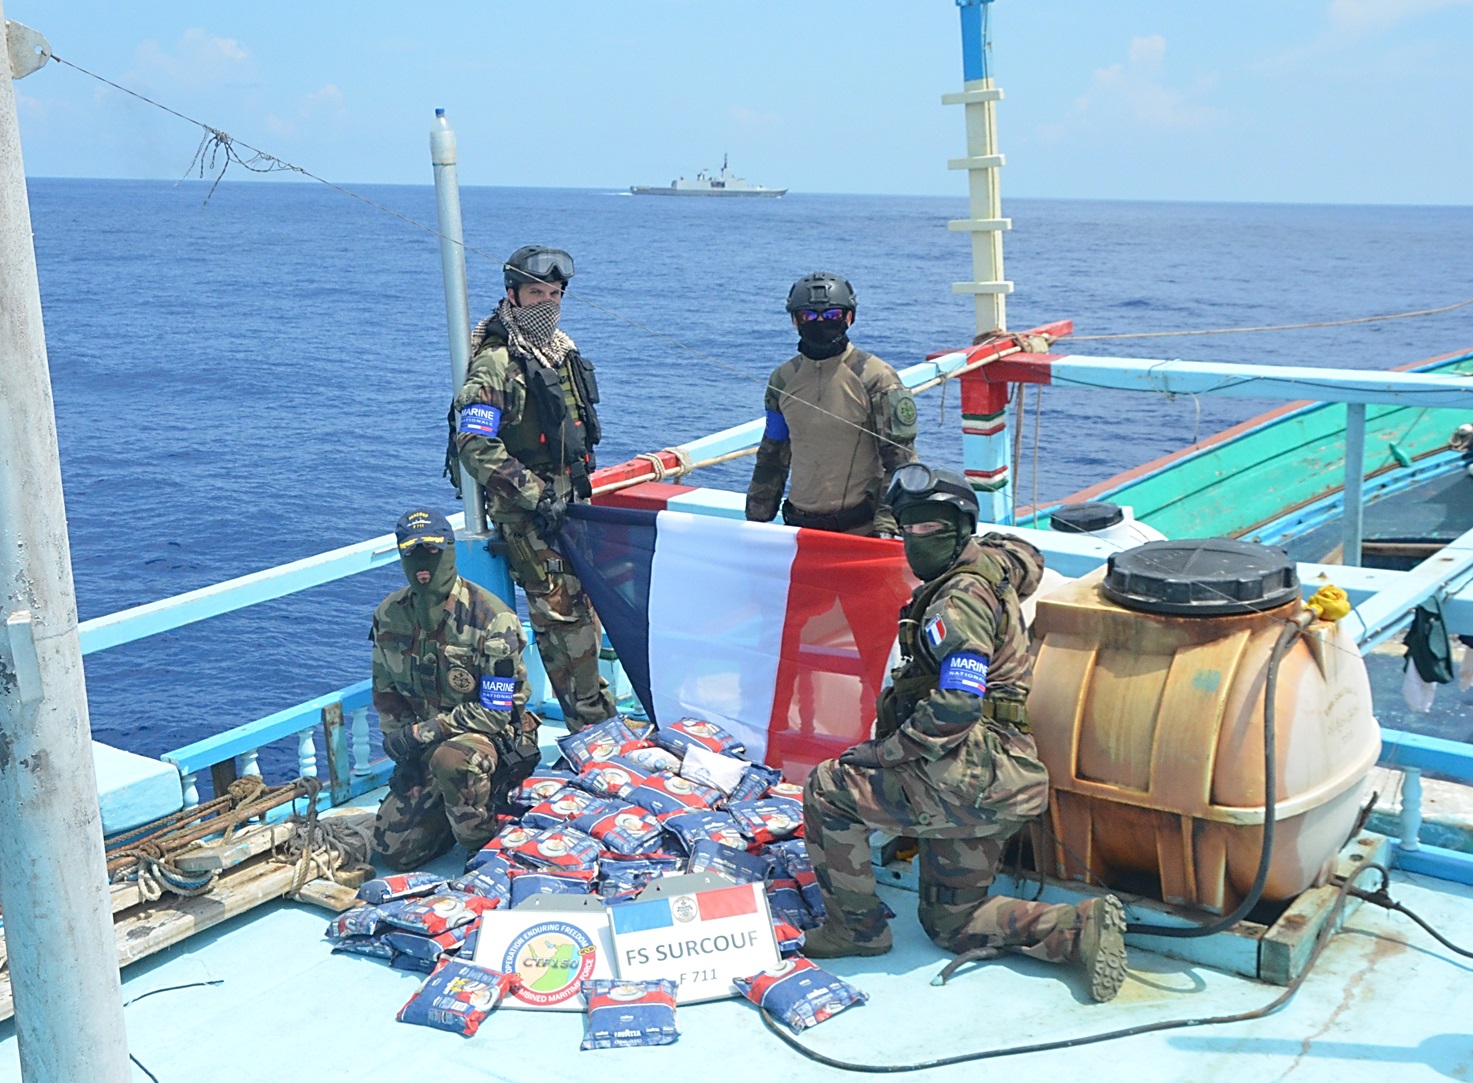 La frégate Surcouf réalise une importante saisie de drogue  en océan Indien